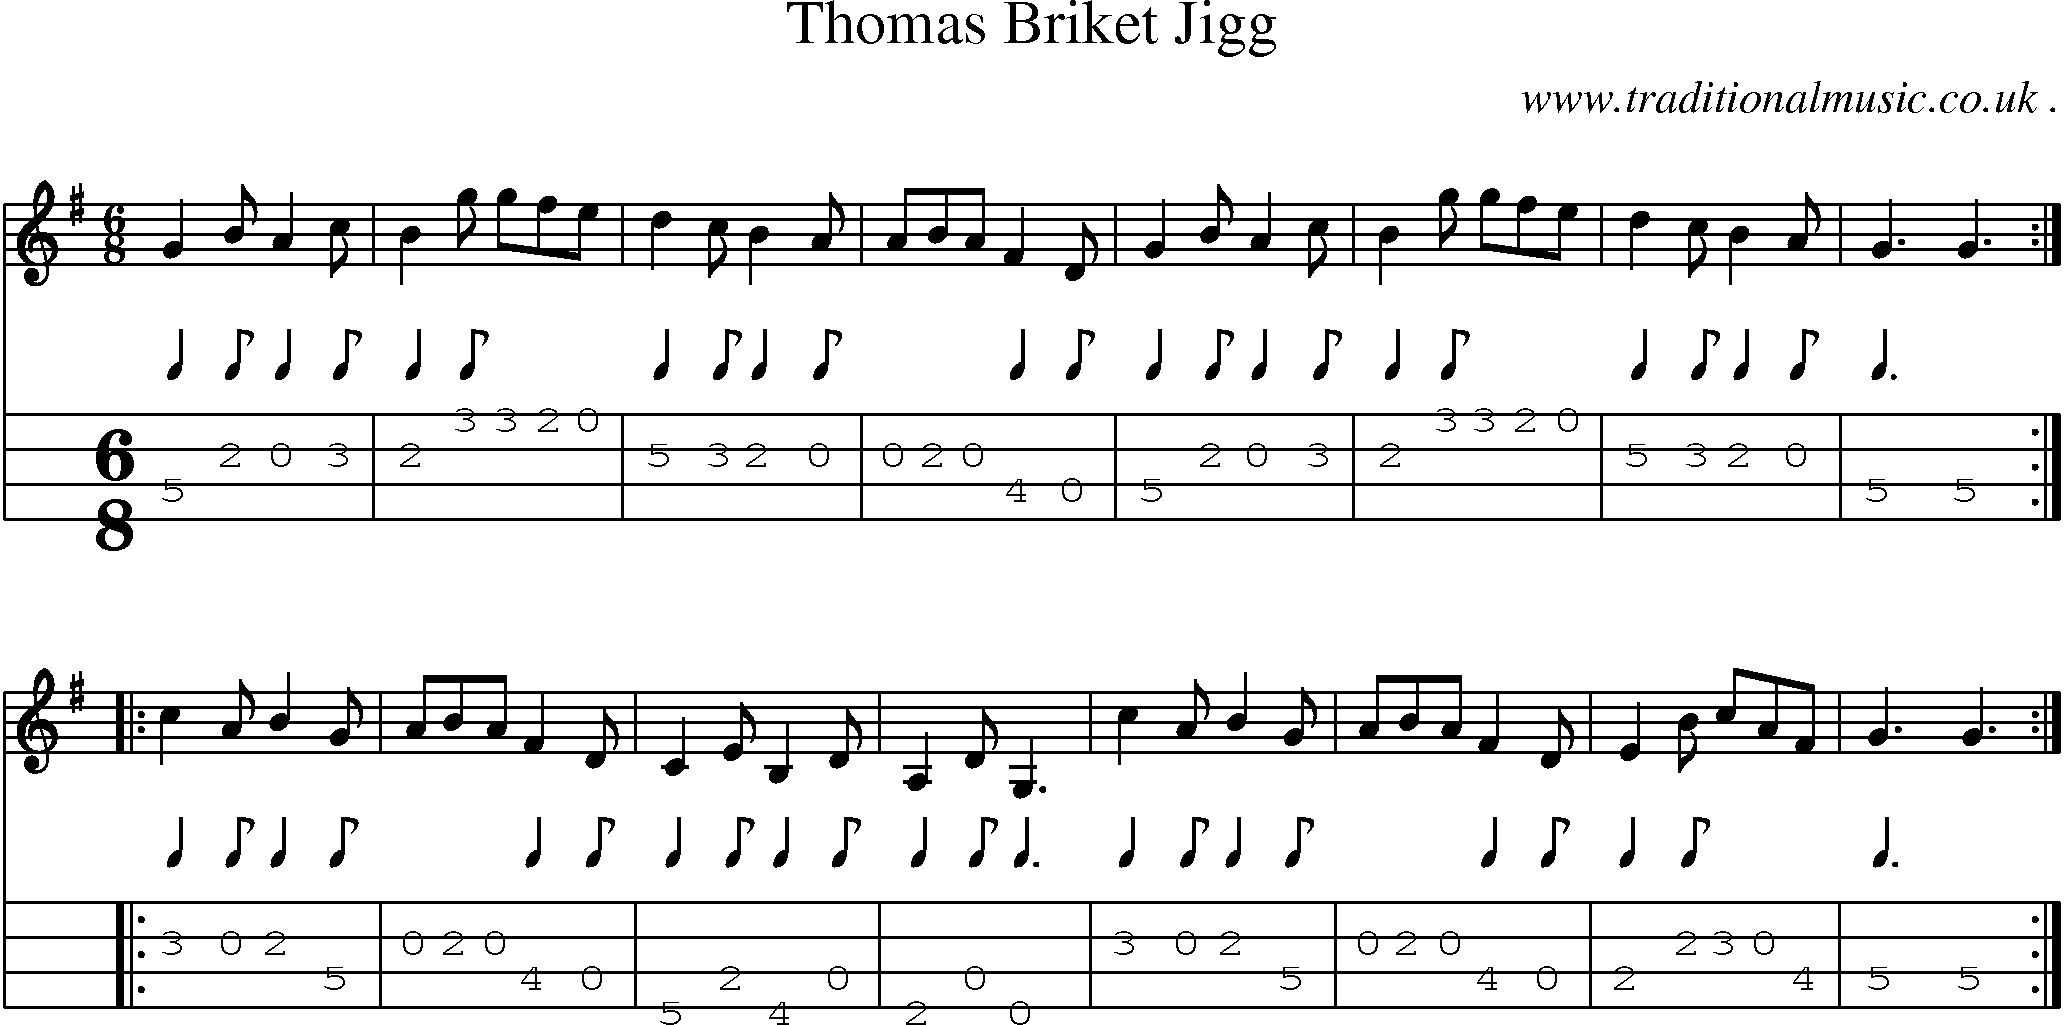 Sheet-Music and Mandolin Tabs for Thomas Briket Jigg